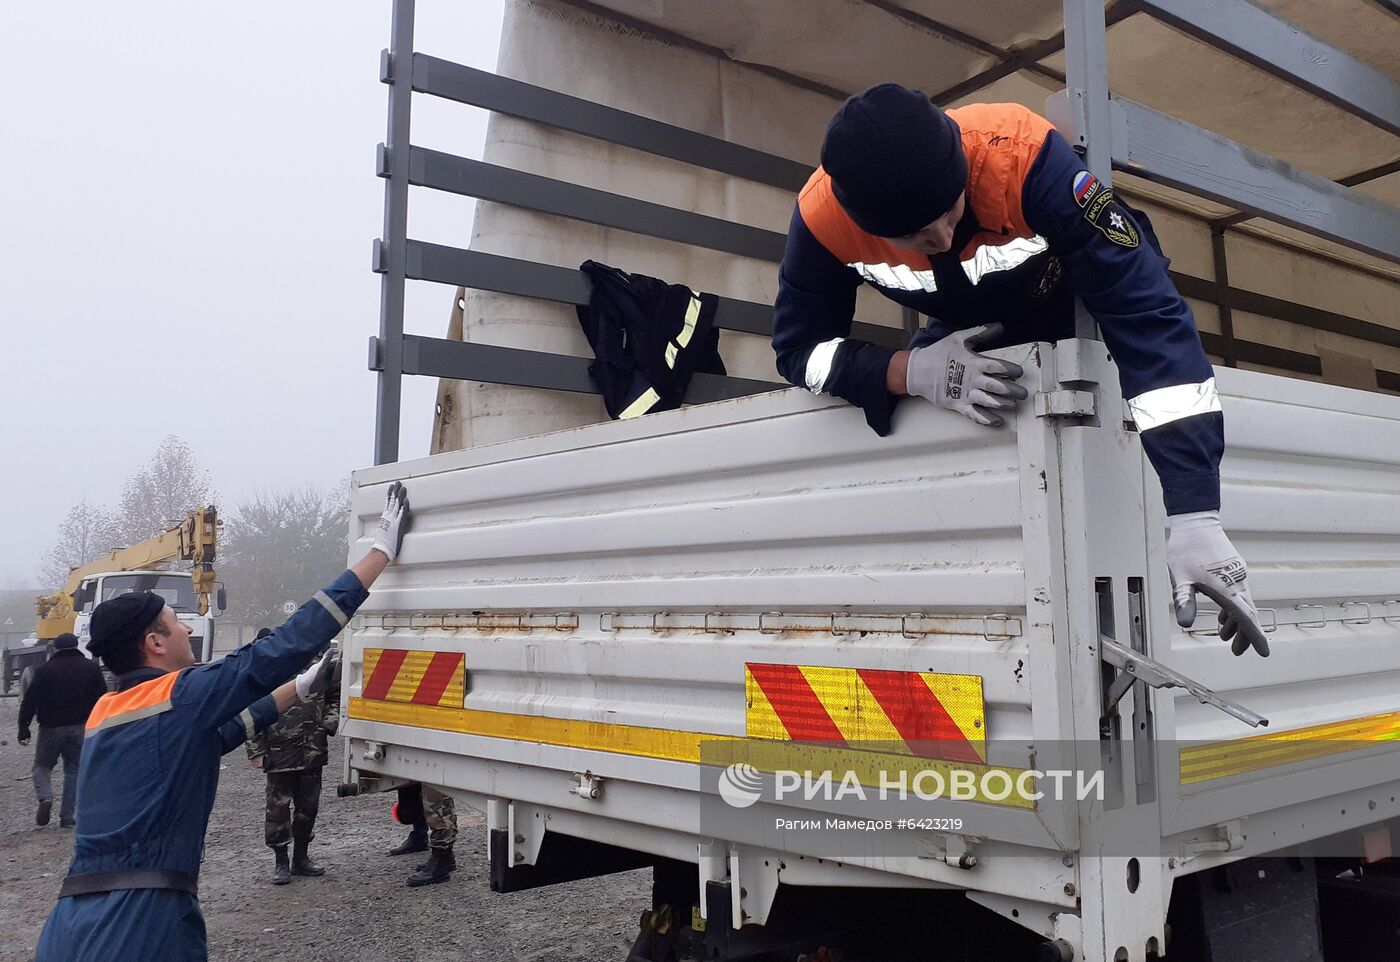 Гуманитарная помощь из России прибыла в Азербайджан